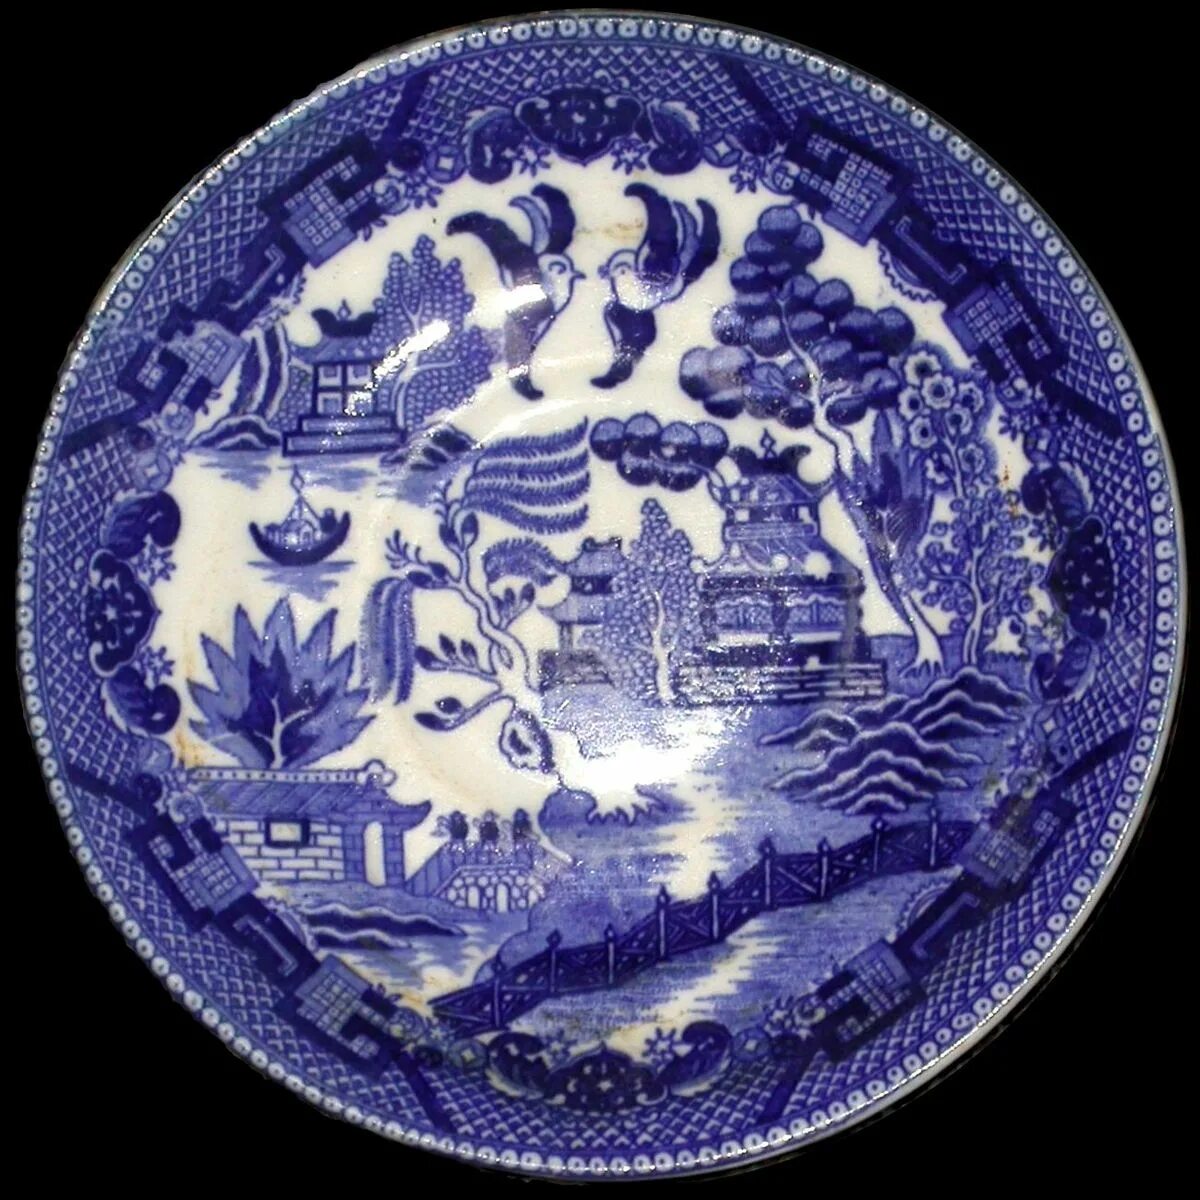 Фарфор узор. Китайский фарфор с бело-синим орнаментом.